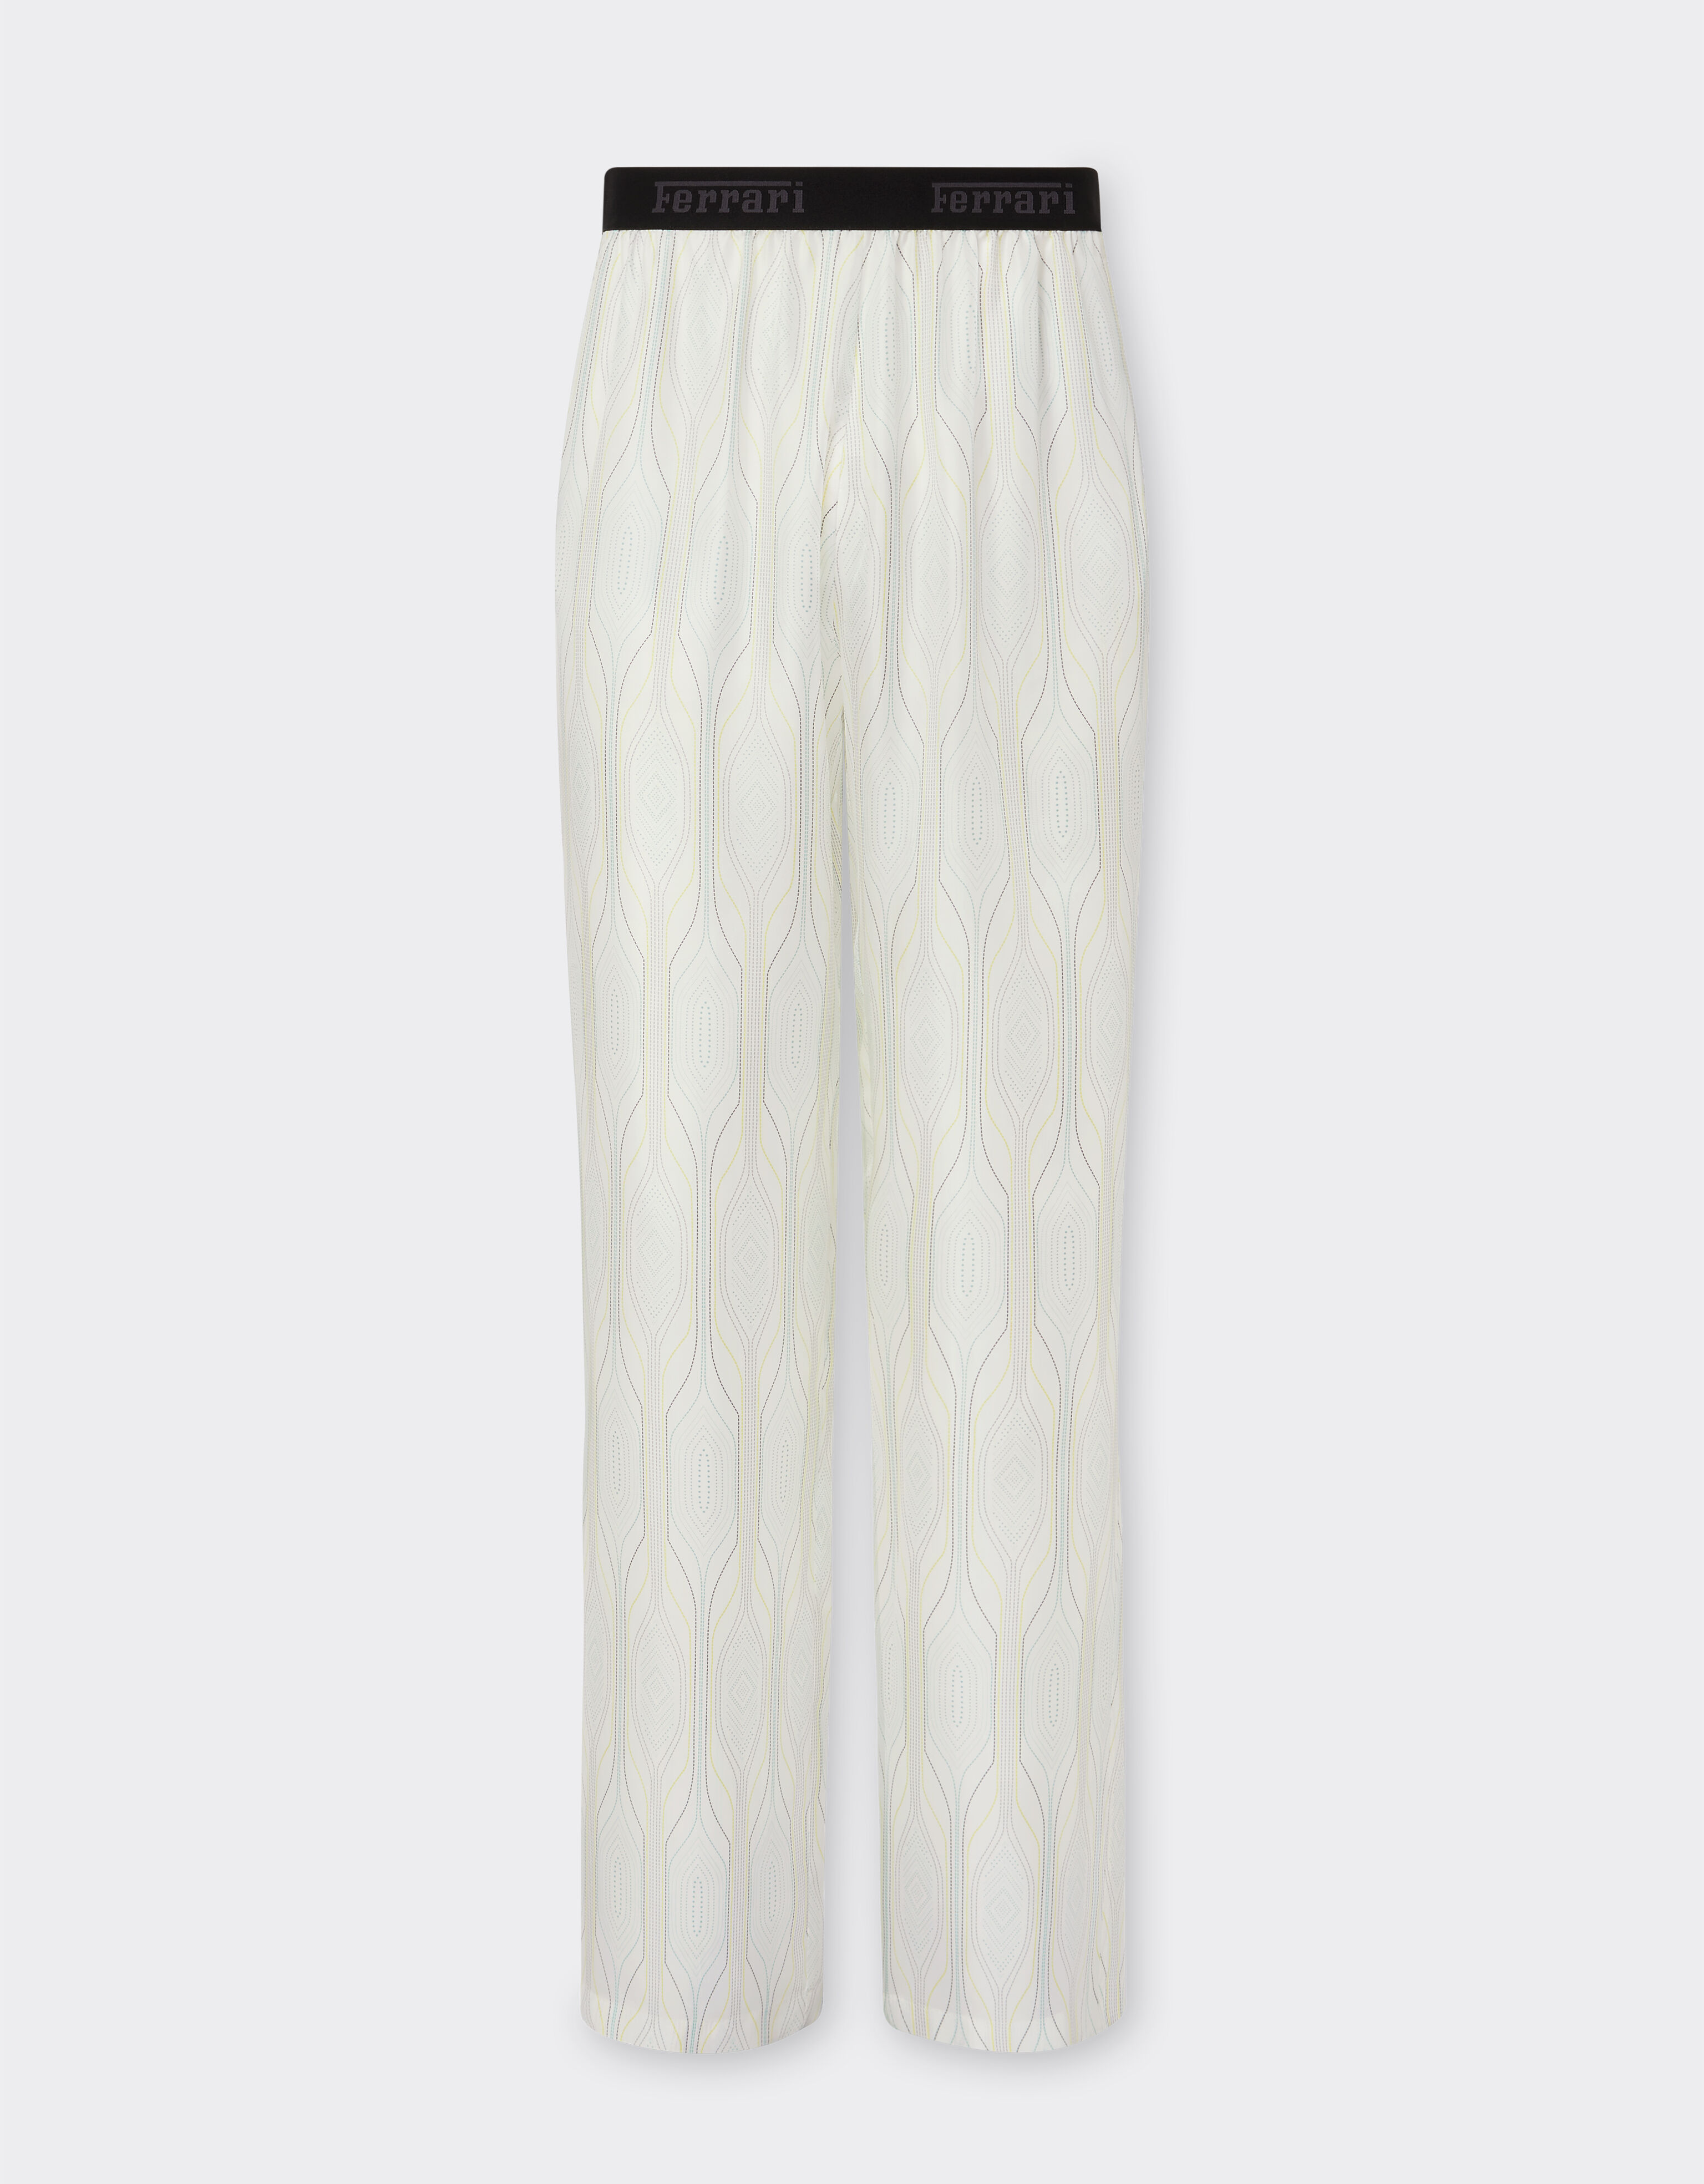 Ferrari Miami Collection silk trousers Optical White 21255f